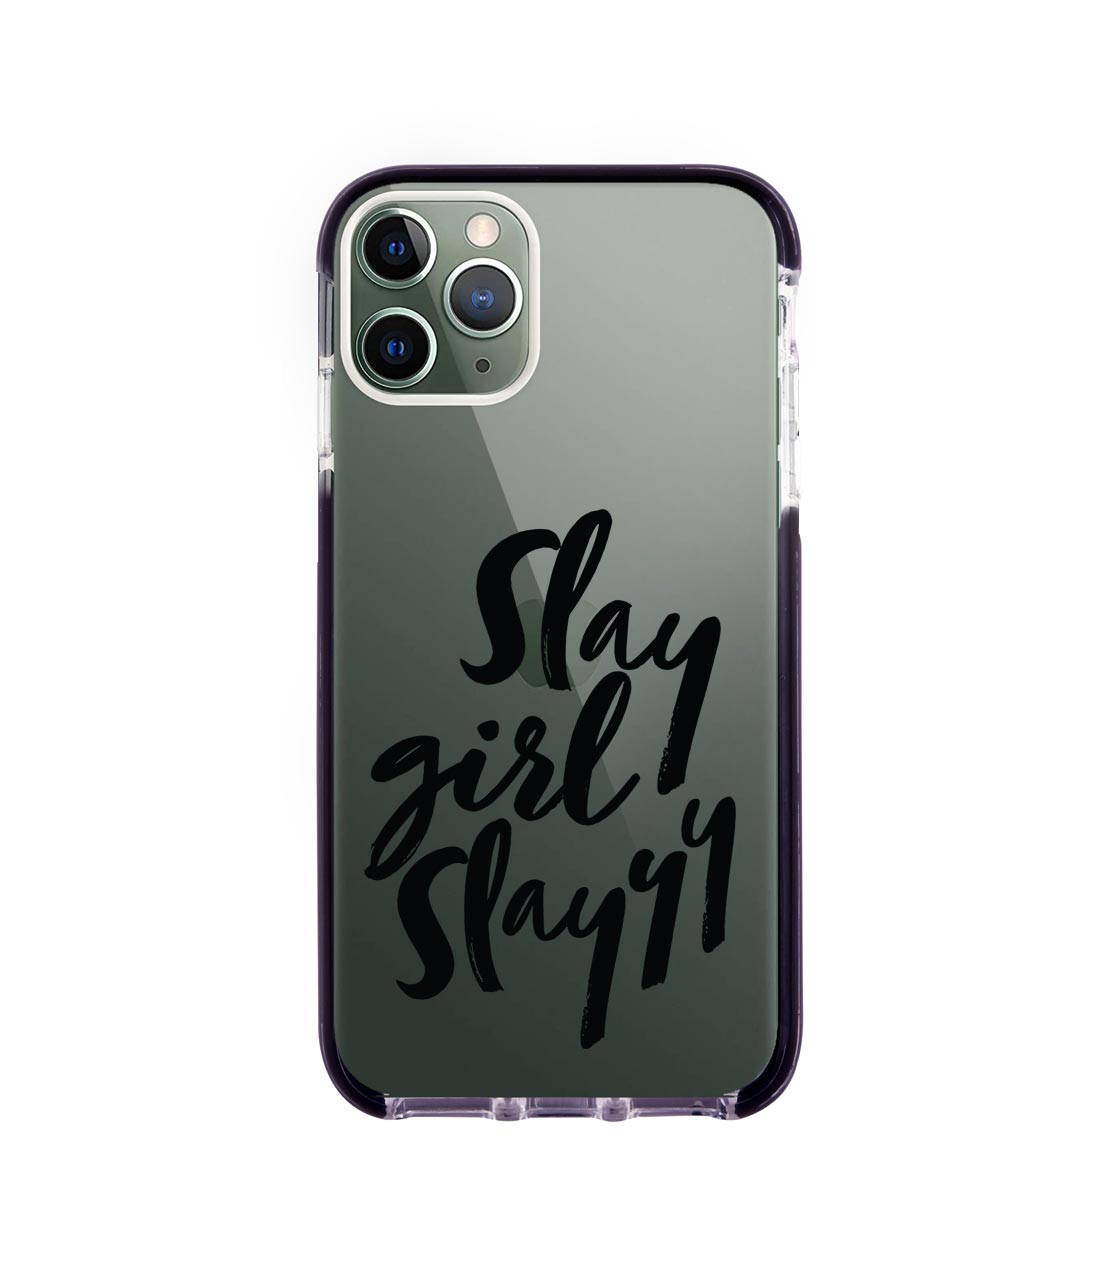 Slay girl Slay - Extreme Phone Case for iPhone 11 Pro